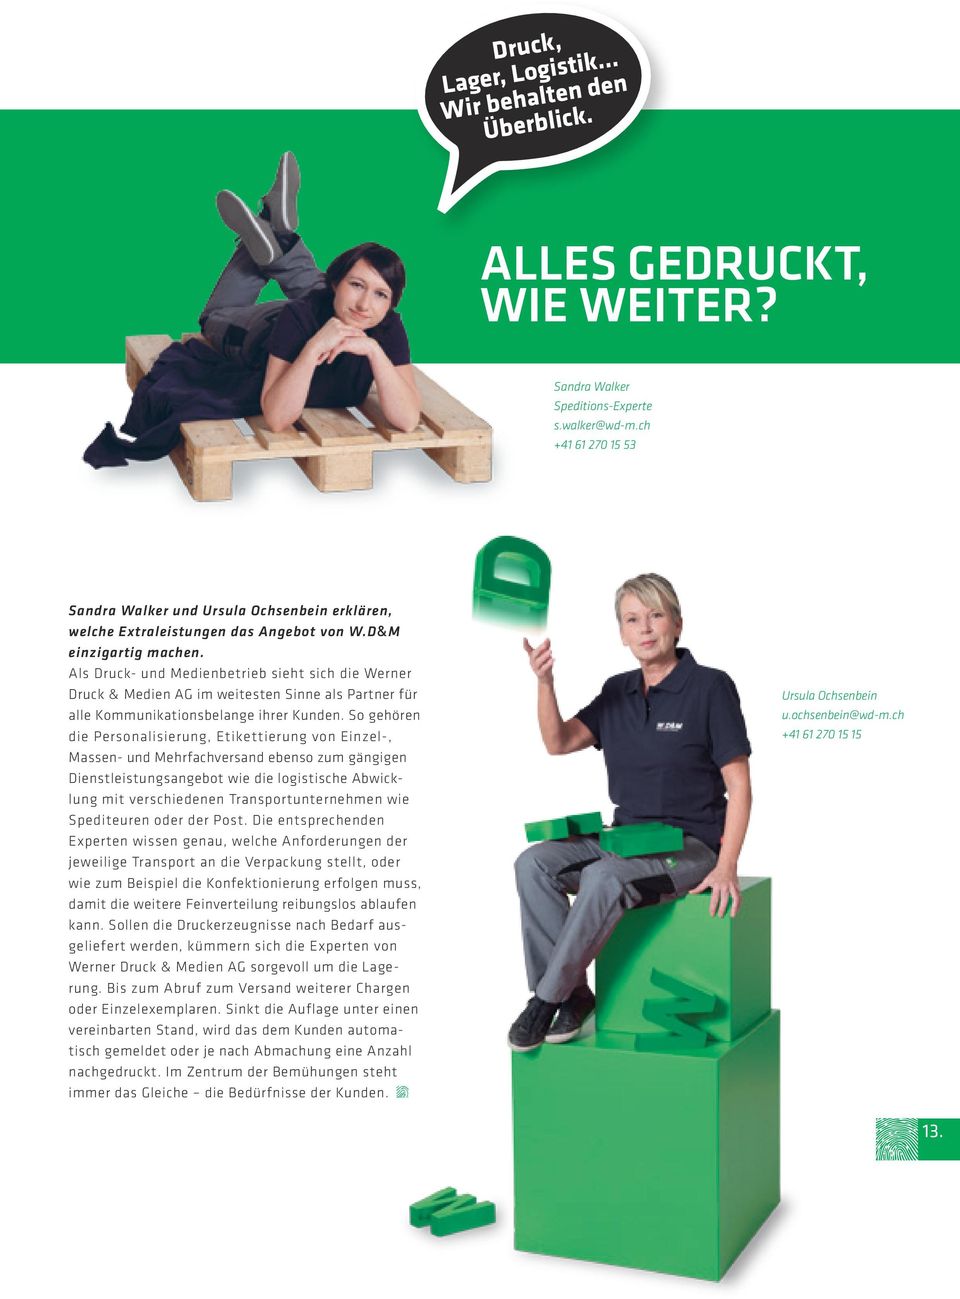 Als Druck- und Medienbetrieb sieht sich die Werner Druck & Medien AG im weitesten Sinne als Partner für alle Kommunikationsbelange ihrer Kunden.